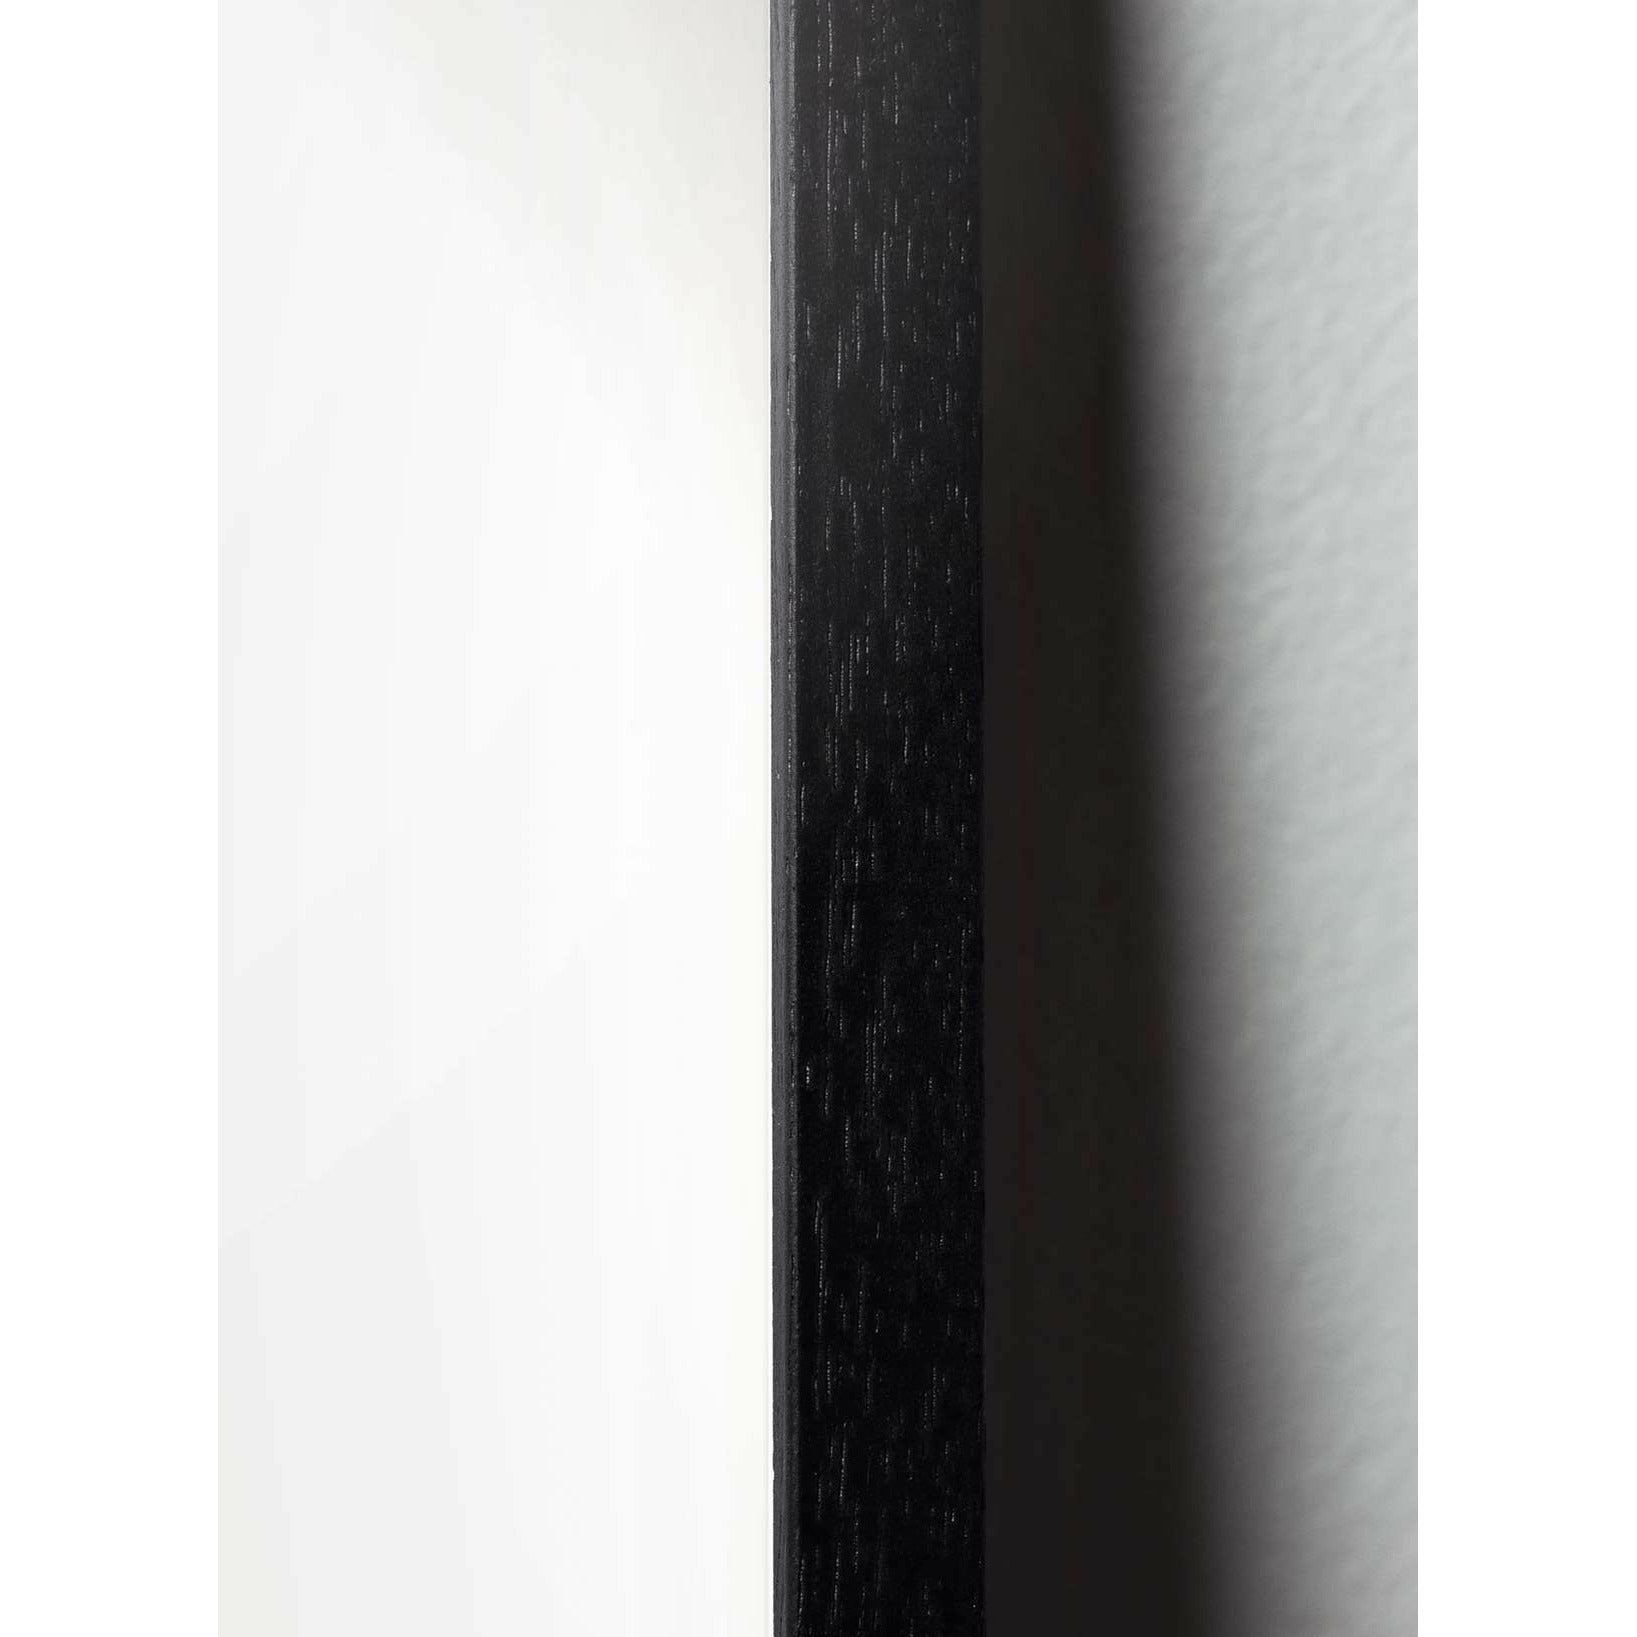 Pomysły plakat linii jaj, rama w czarnym lakierowanym drewnie 50x70 cm, białe tło